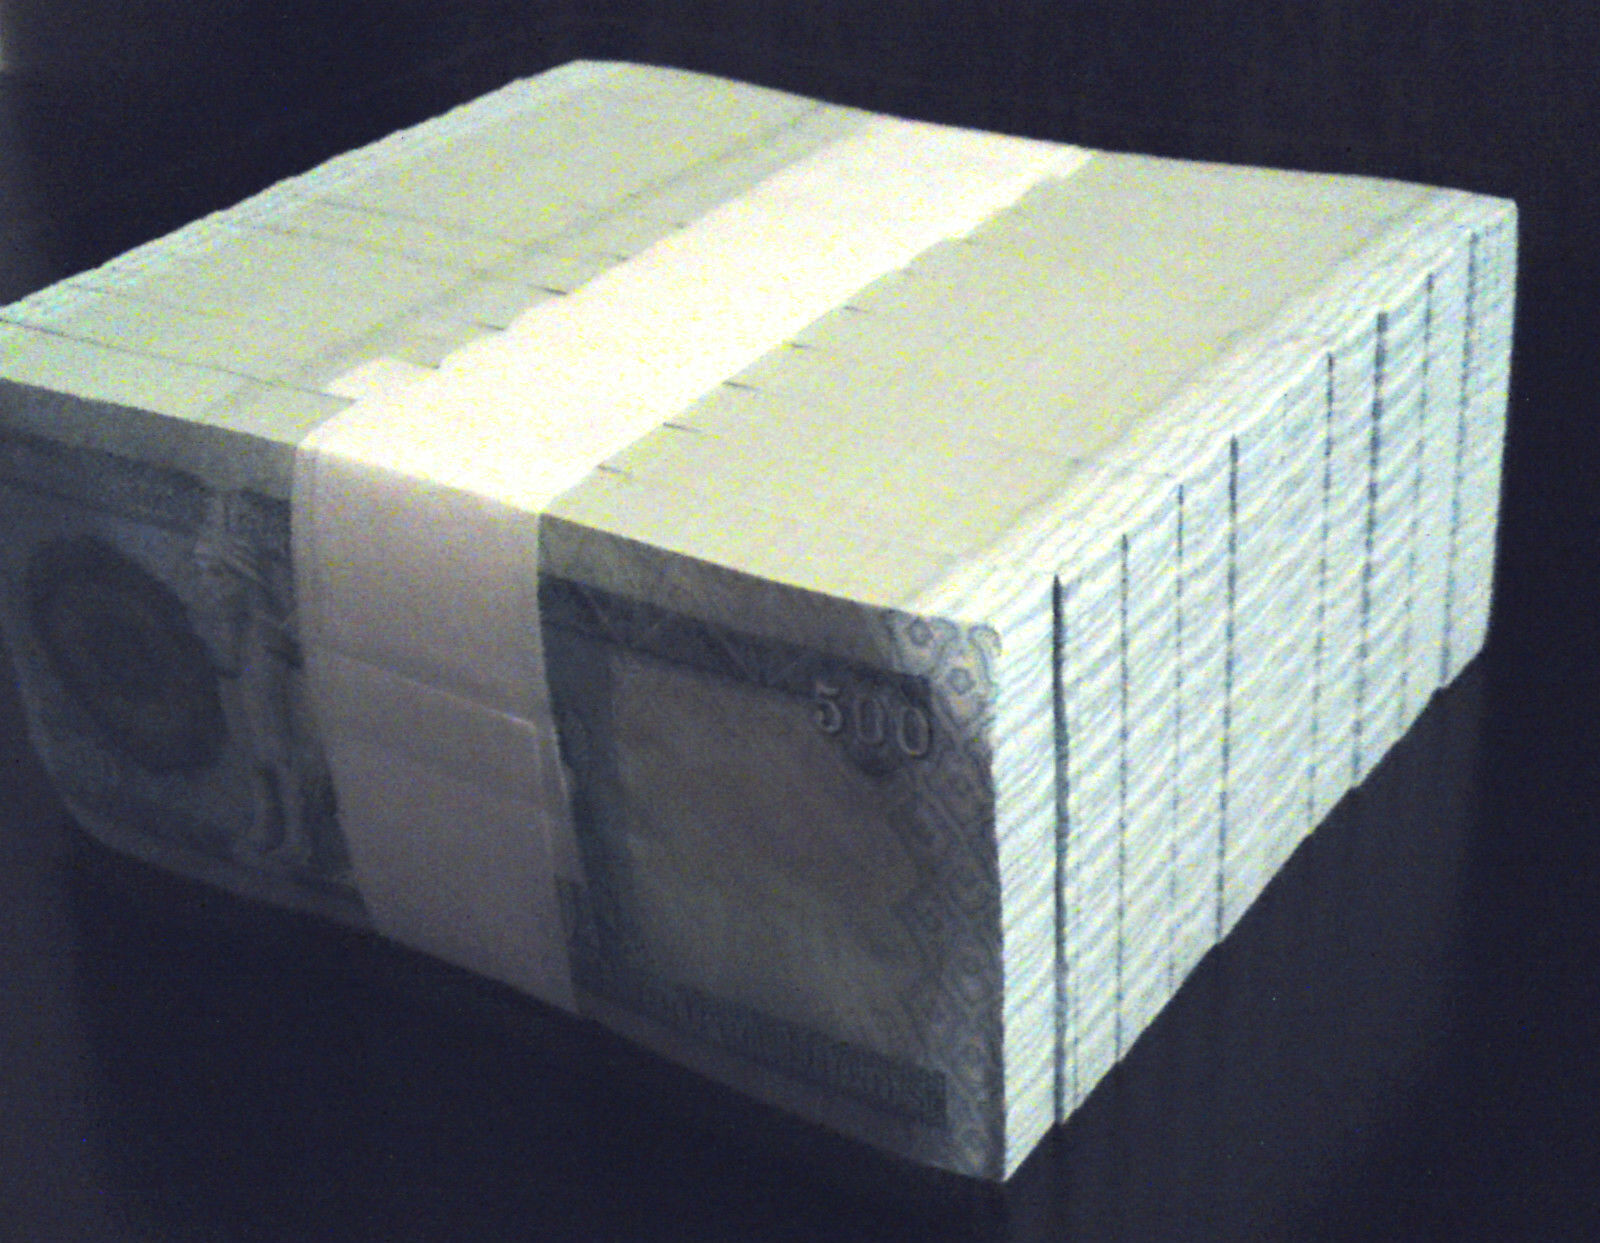 5000 Iraq Iraqi Dinar  10 X 500 Dinar Notes  Limit Of 2 Sets  5,000 Total